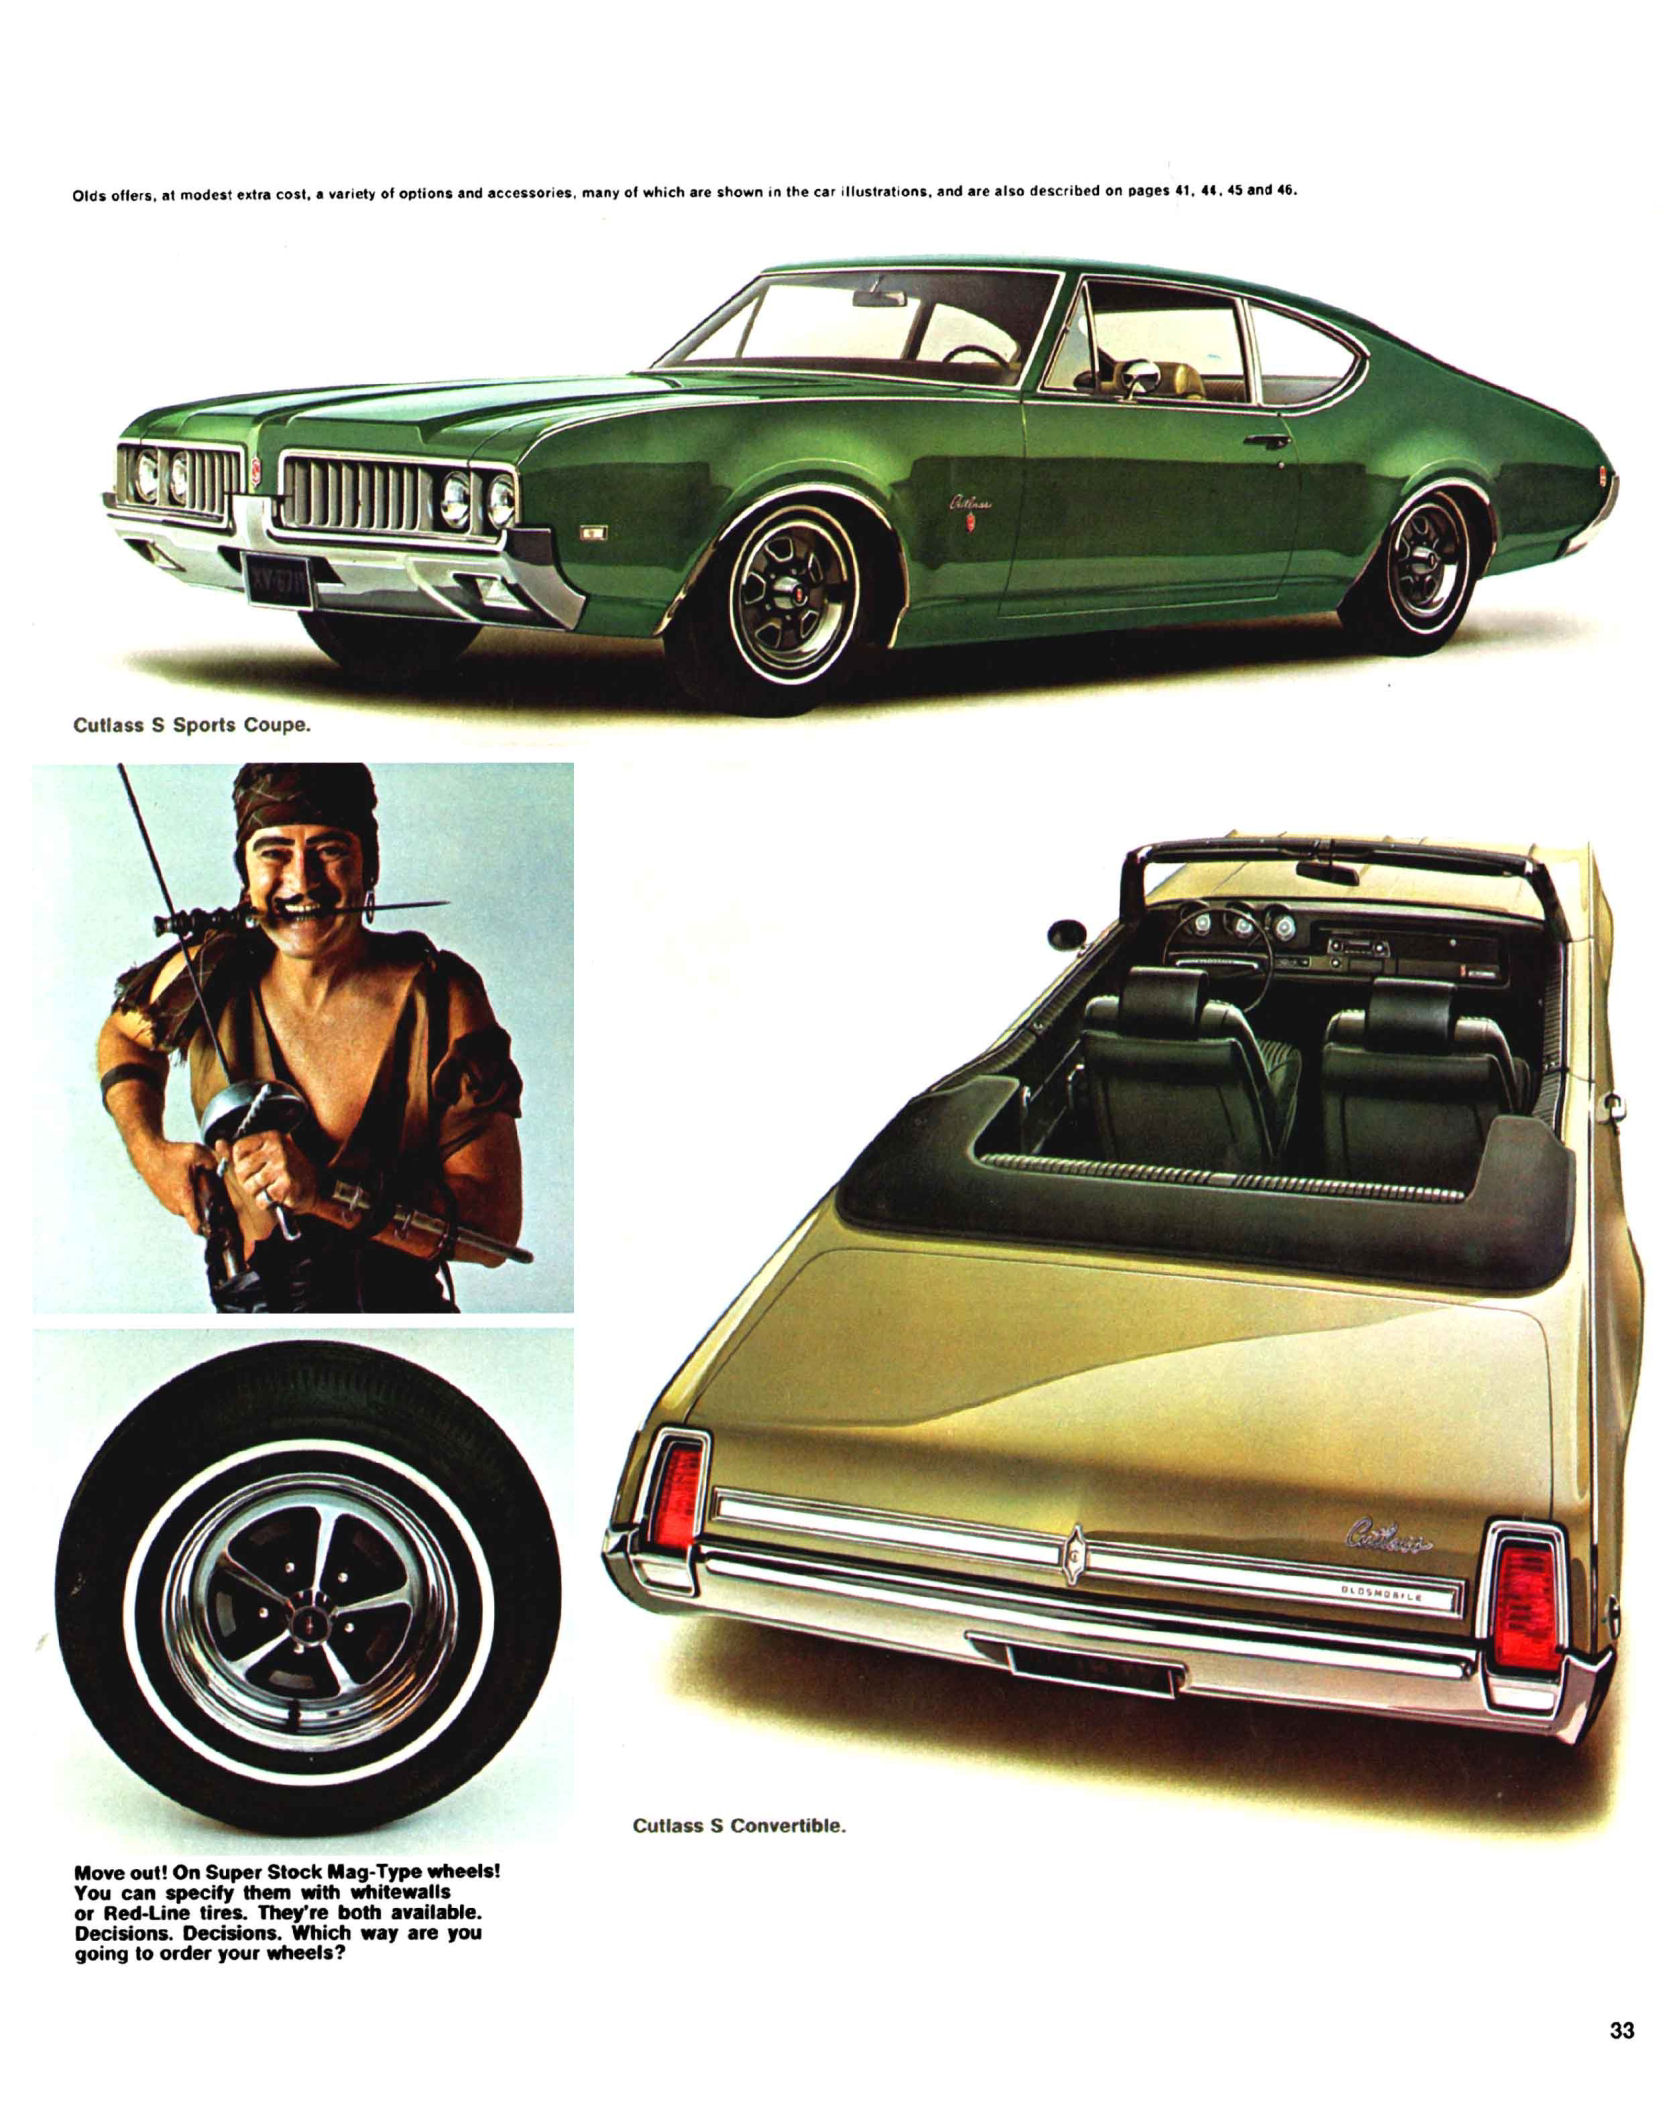 1969_Oldsmobile_Full_Line_Prestige-33